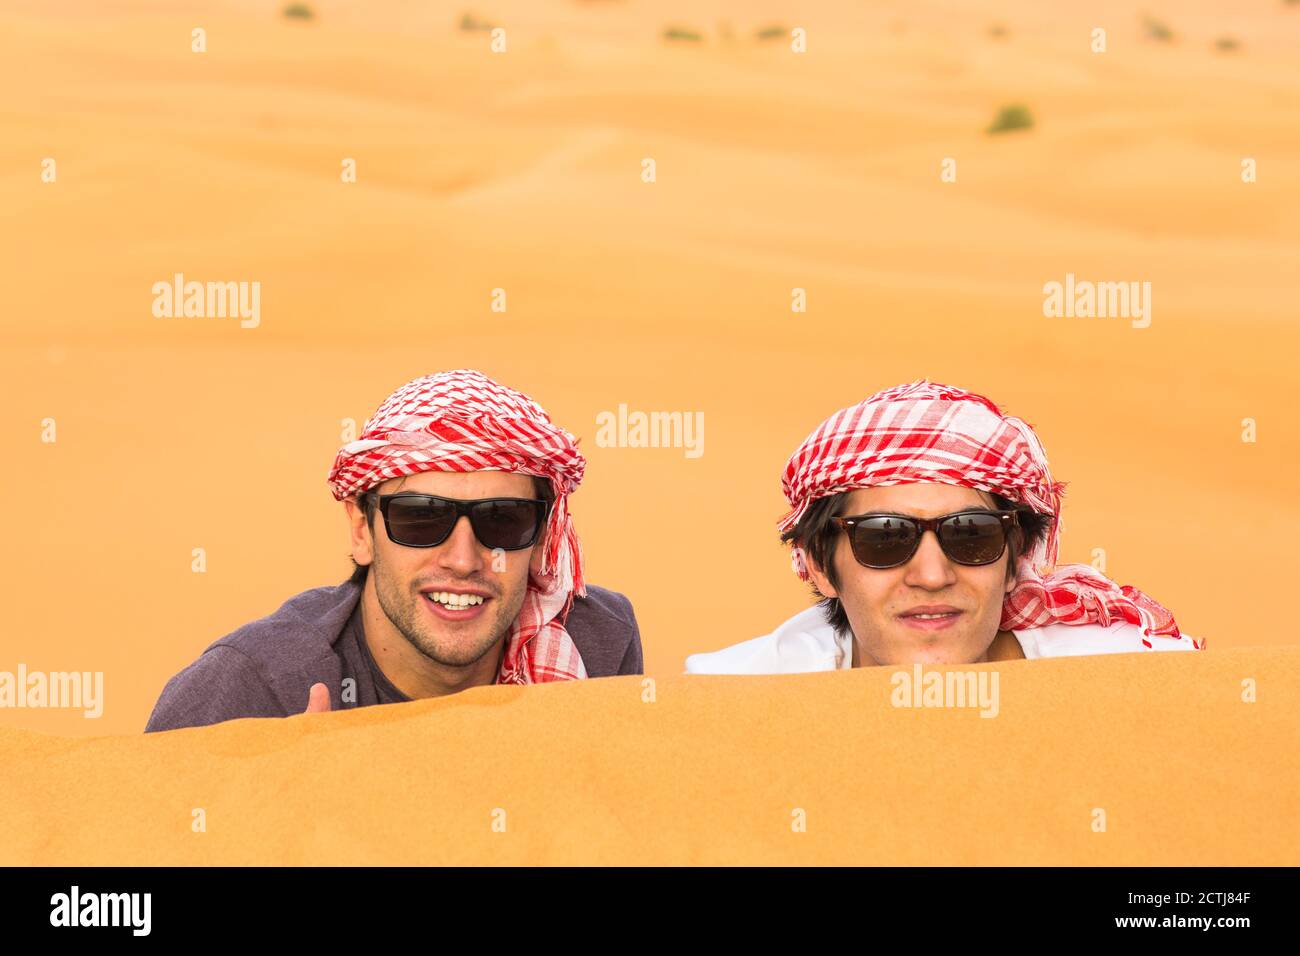 Zwei glückliche männliche Touristen genießen eine Safari-Tour in der arabischen Wüste Sanddünen. Reisen und Tourismus. Stockfoto